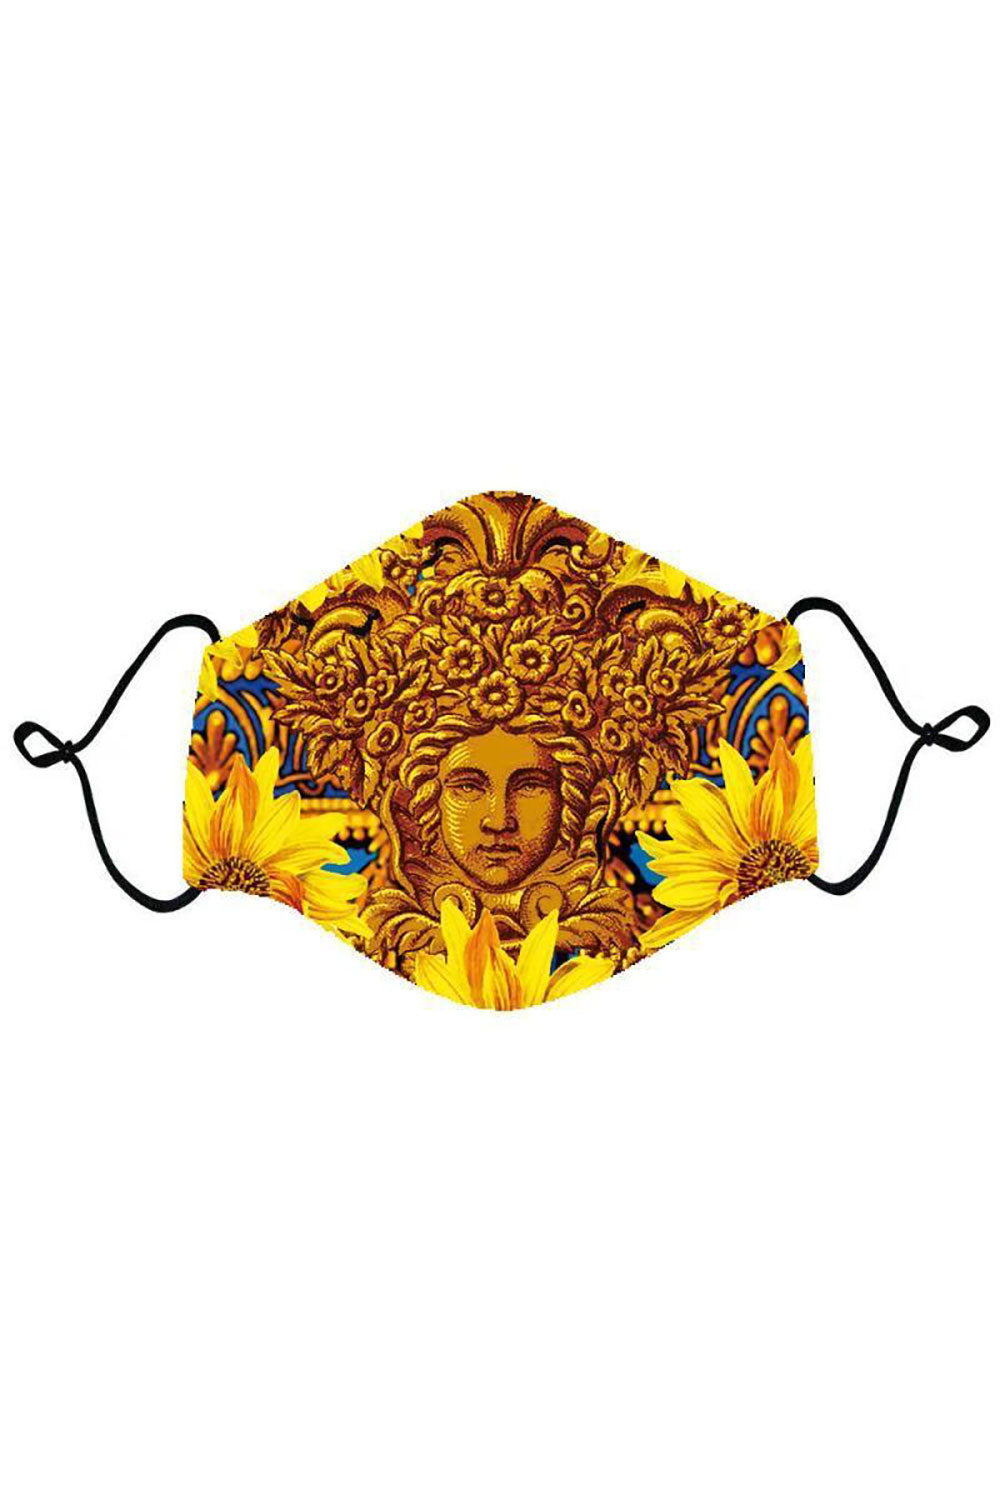 BARABAS Men Mask The Golden Flower Mask Multi Color MSP200 